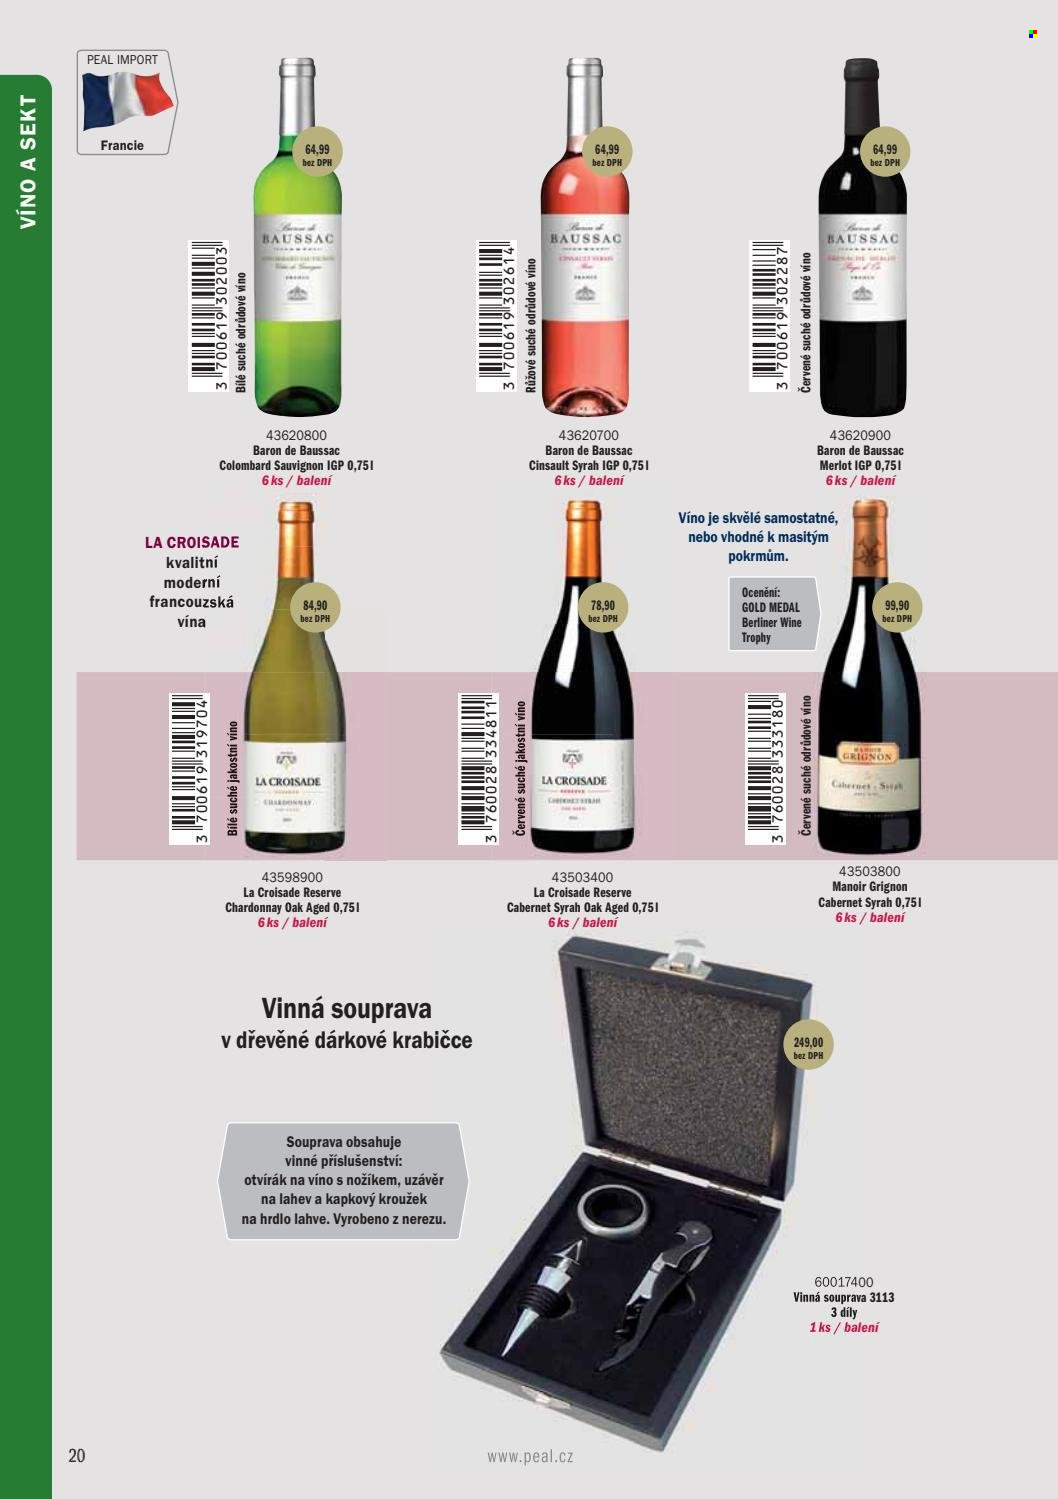 thumbnail - Leták PEAL - Produkty v akci - bílé víno, červené víno, sekt, Chardonnay, Merlot, Syrah. Strana 22.